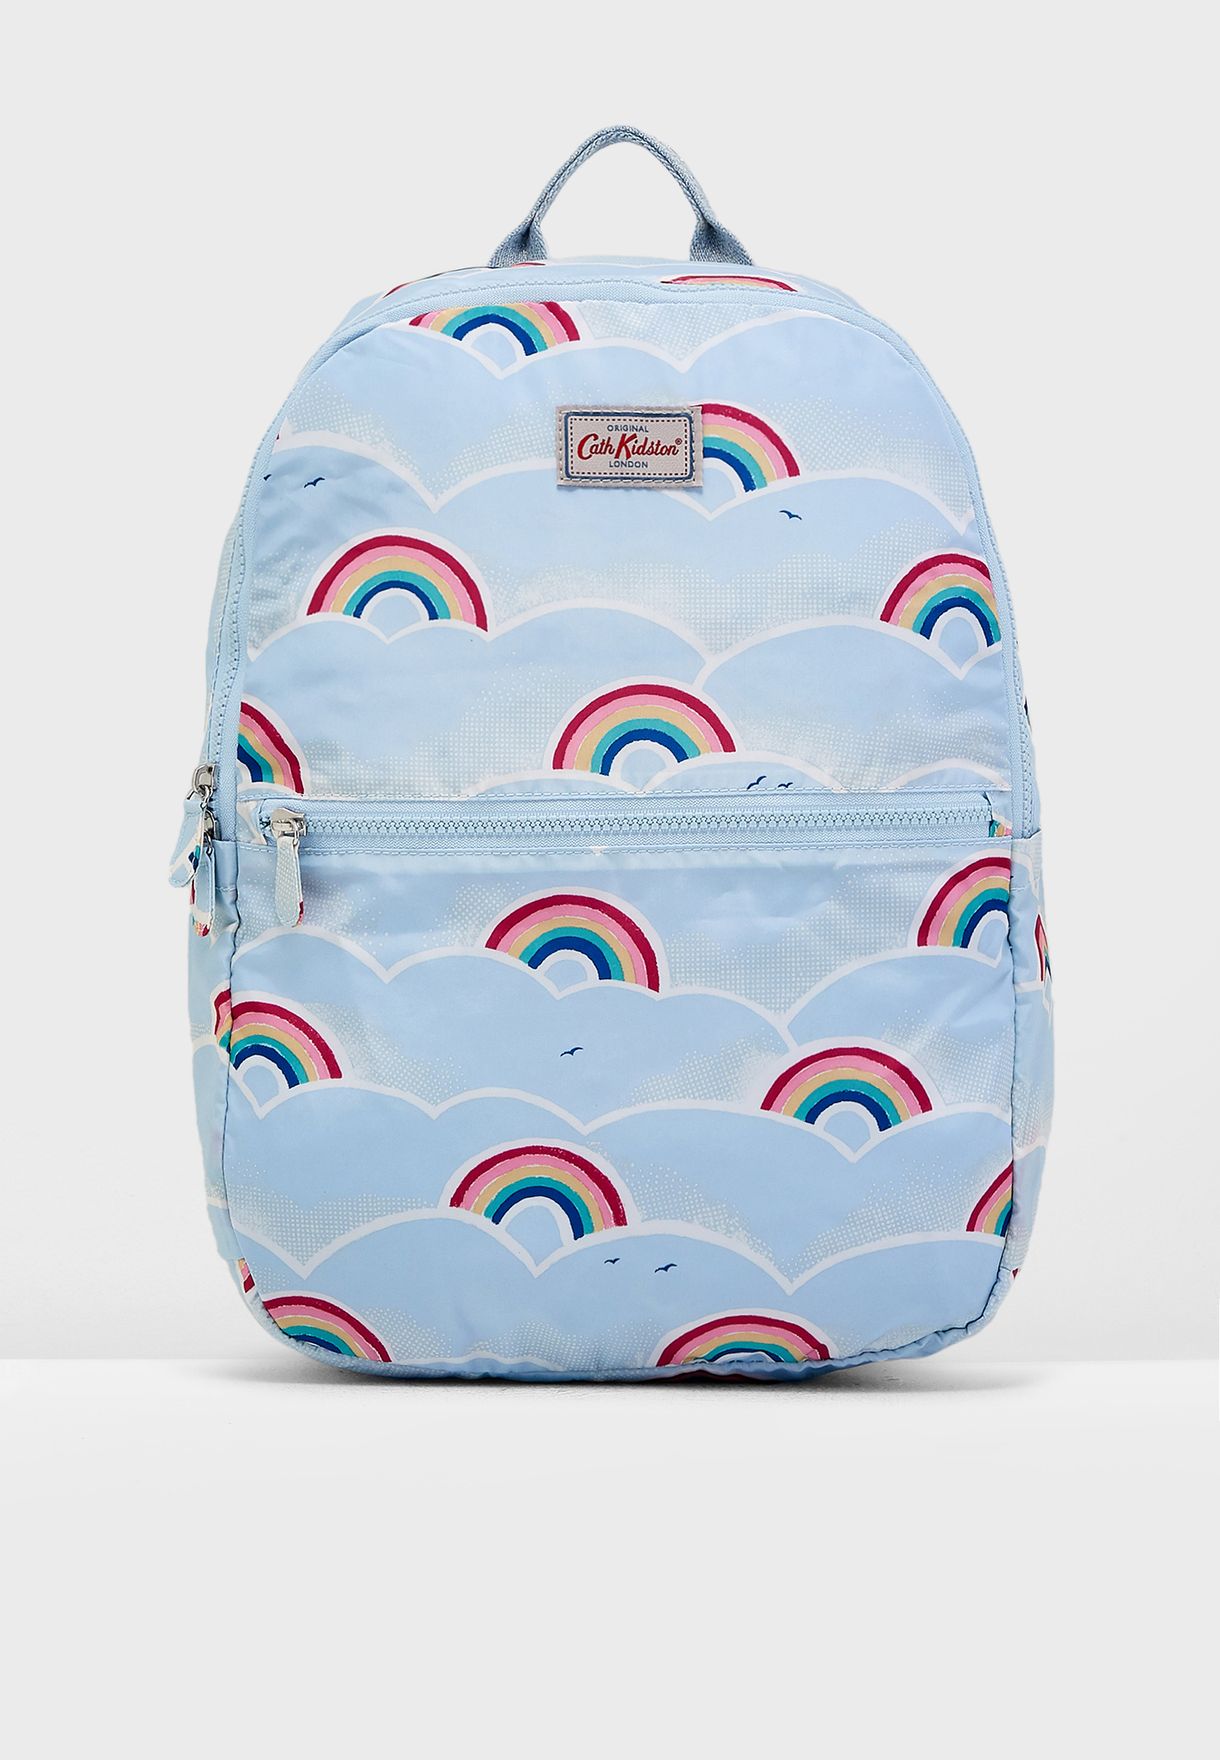 cath kidston backpacks